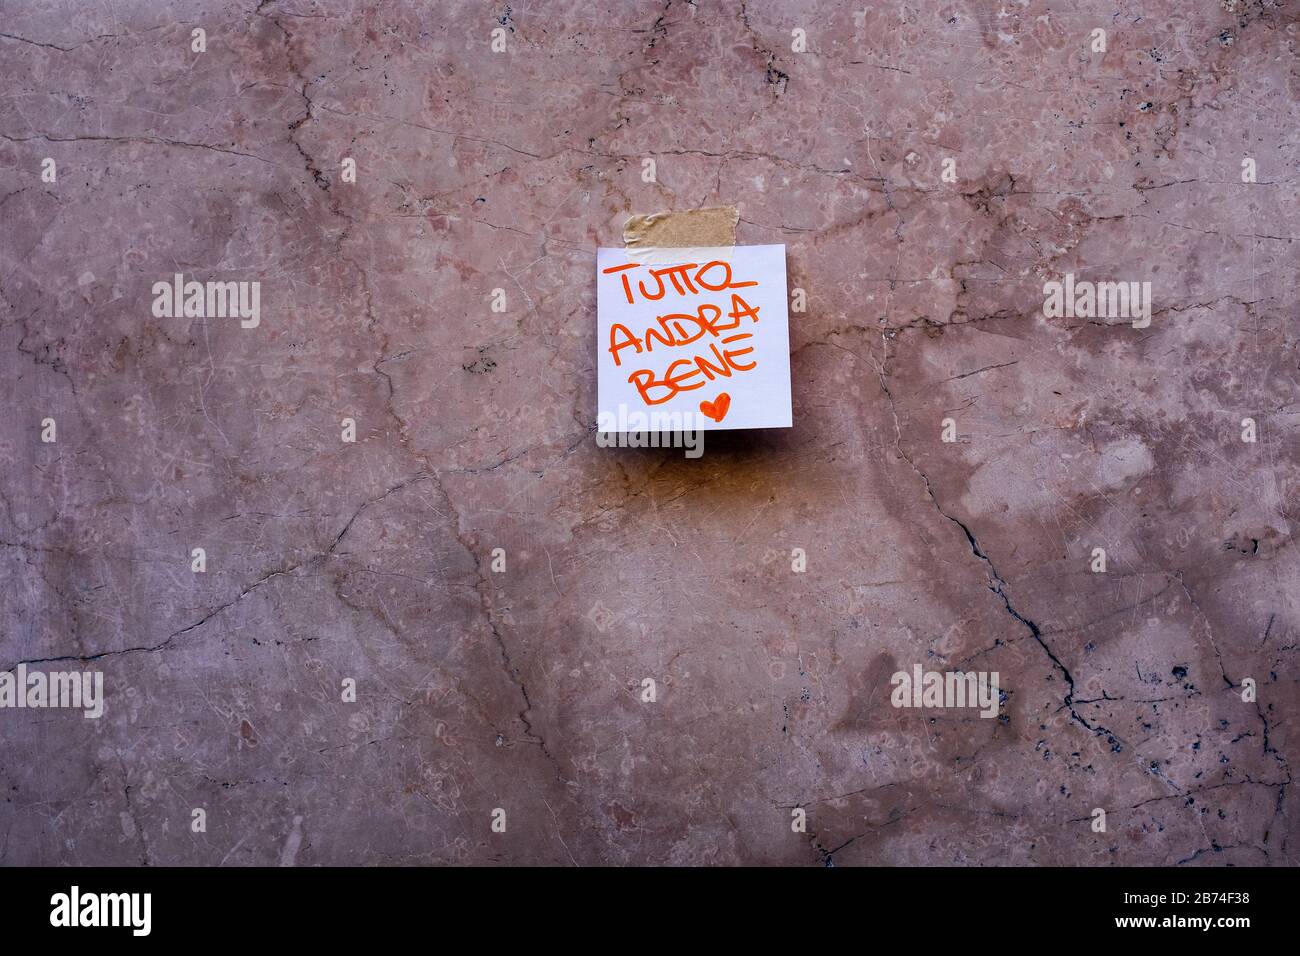 Anonyme Hände hinterlassen ermutigende und hoffnungslose Botschaften an den Wänden: "Alles wird gut sein", von der Lombardei auf der ganzen italienischen Halbinsel. Stockfoto